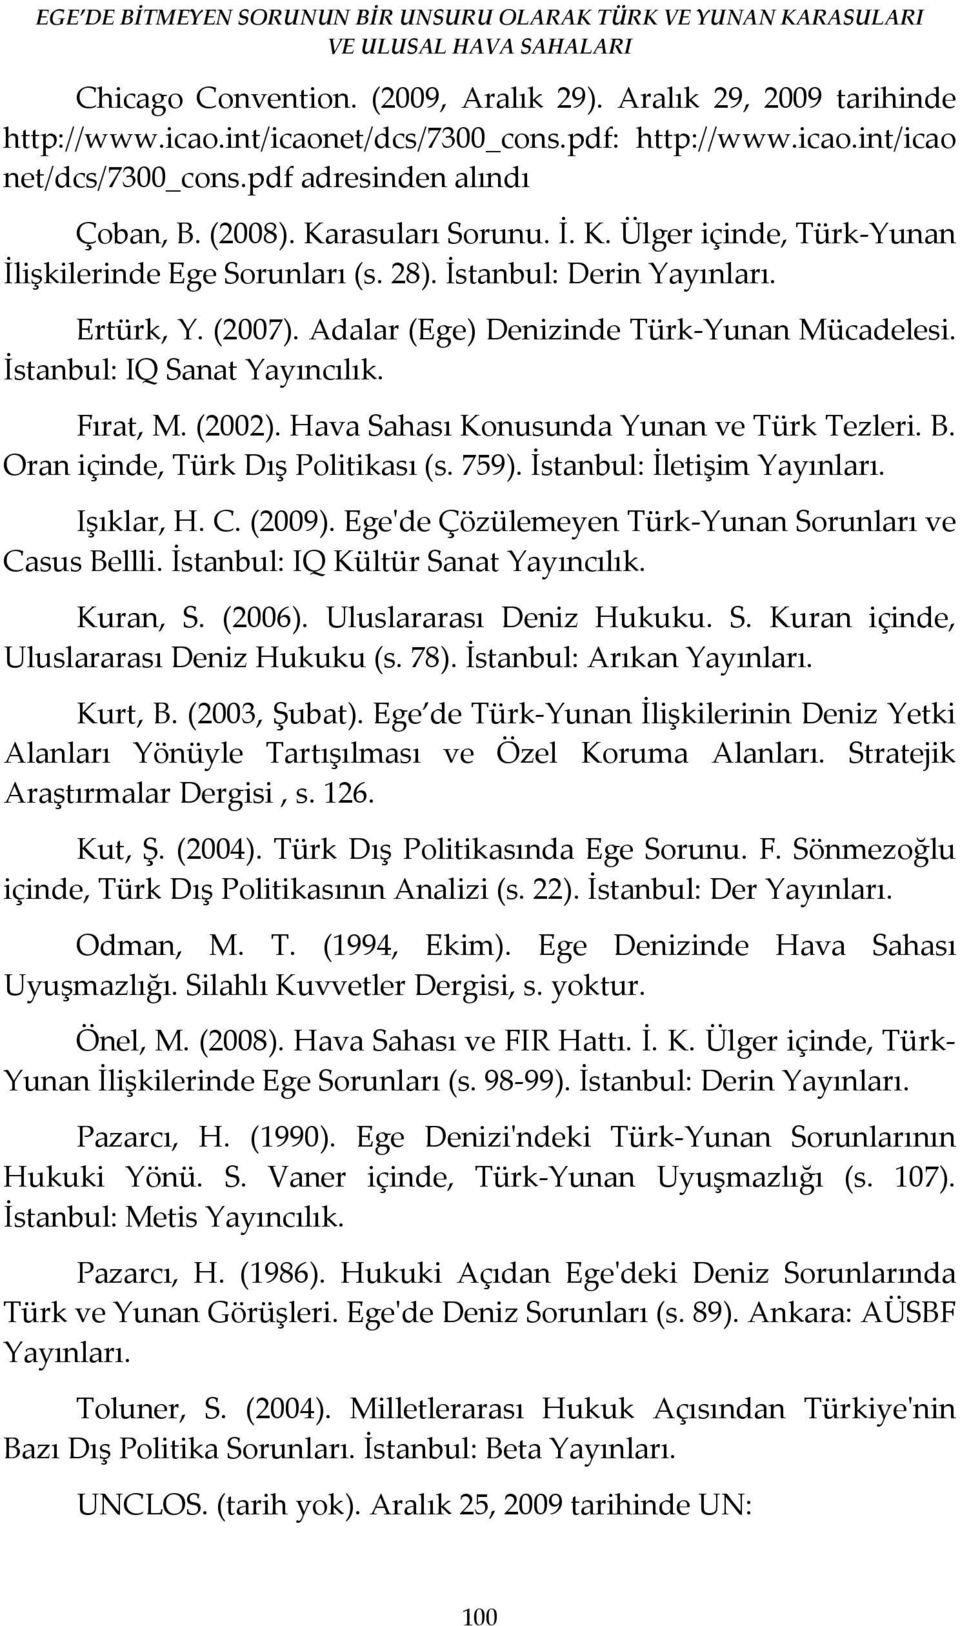 İstanbul: IQ Sanat Yayıncılık. Fırat, M. (2002). Hava Sahası Konusunda Yunan ve Türk Tezleri. B. Oran içinde, Türk Dış Politikası (s. 759). İstanbul: İletişim Yayınları. Işıklar, H. C. (2009).